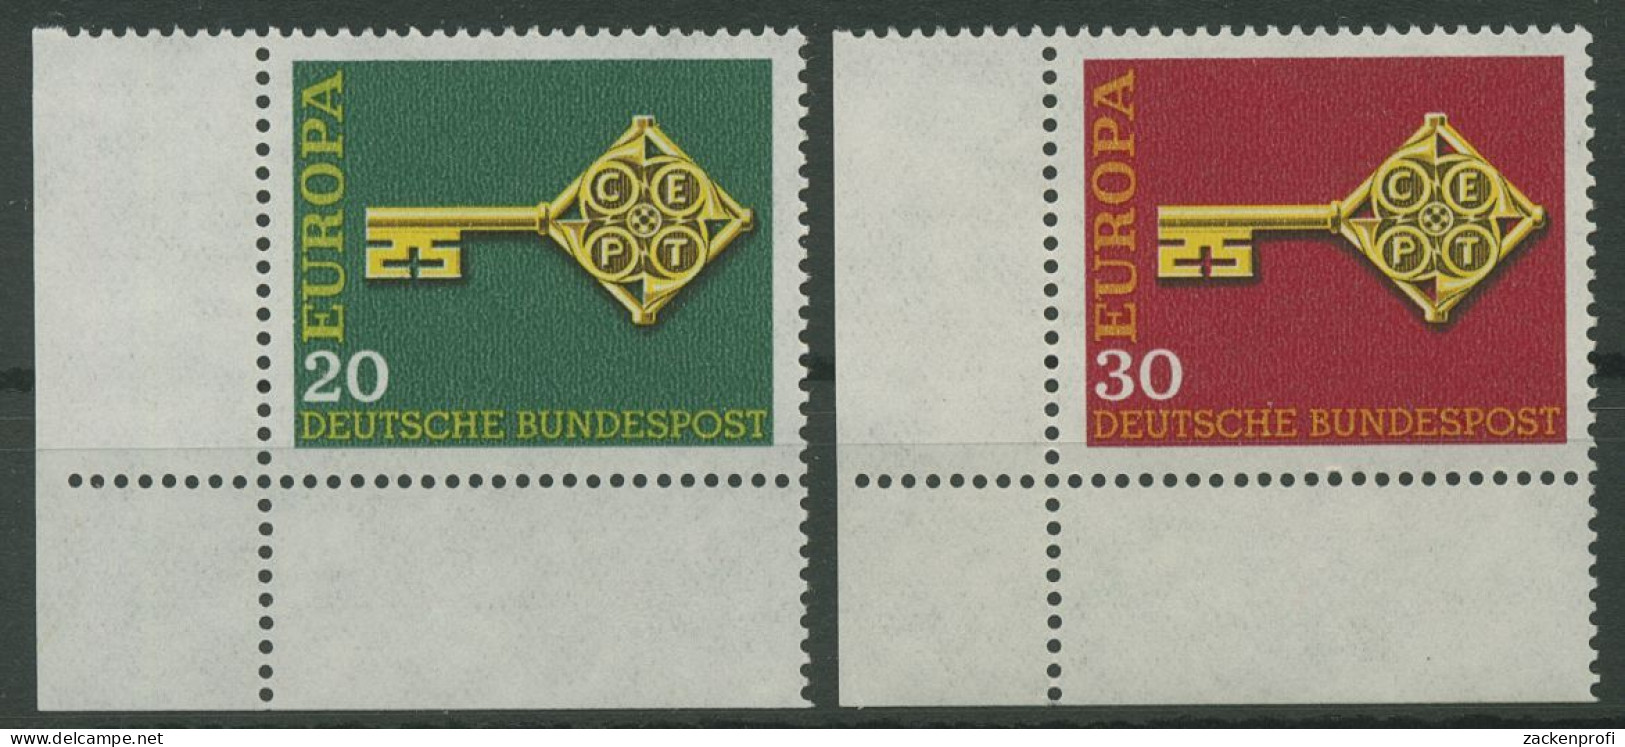 Bund 1968 Europa CEPT 559/60 Ecke 3 Unten Links Postfrisch (E842) - Neufs